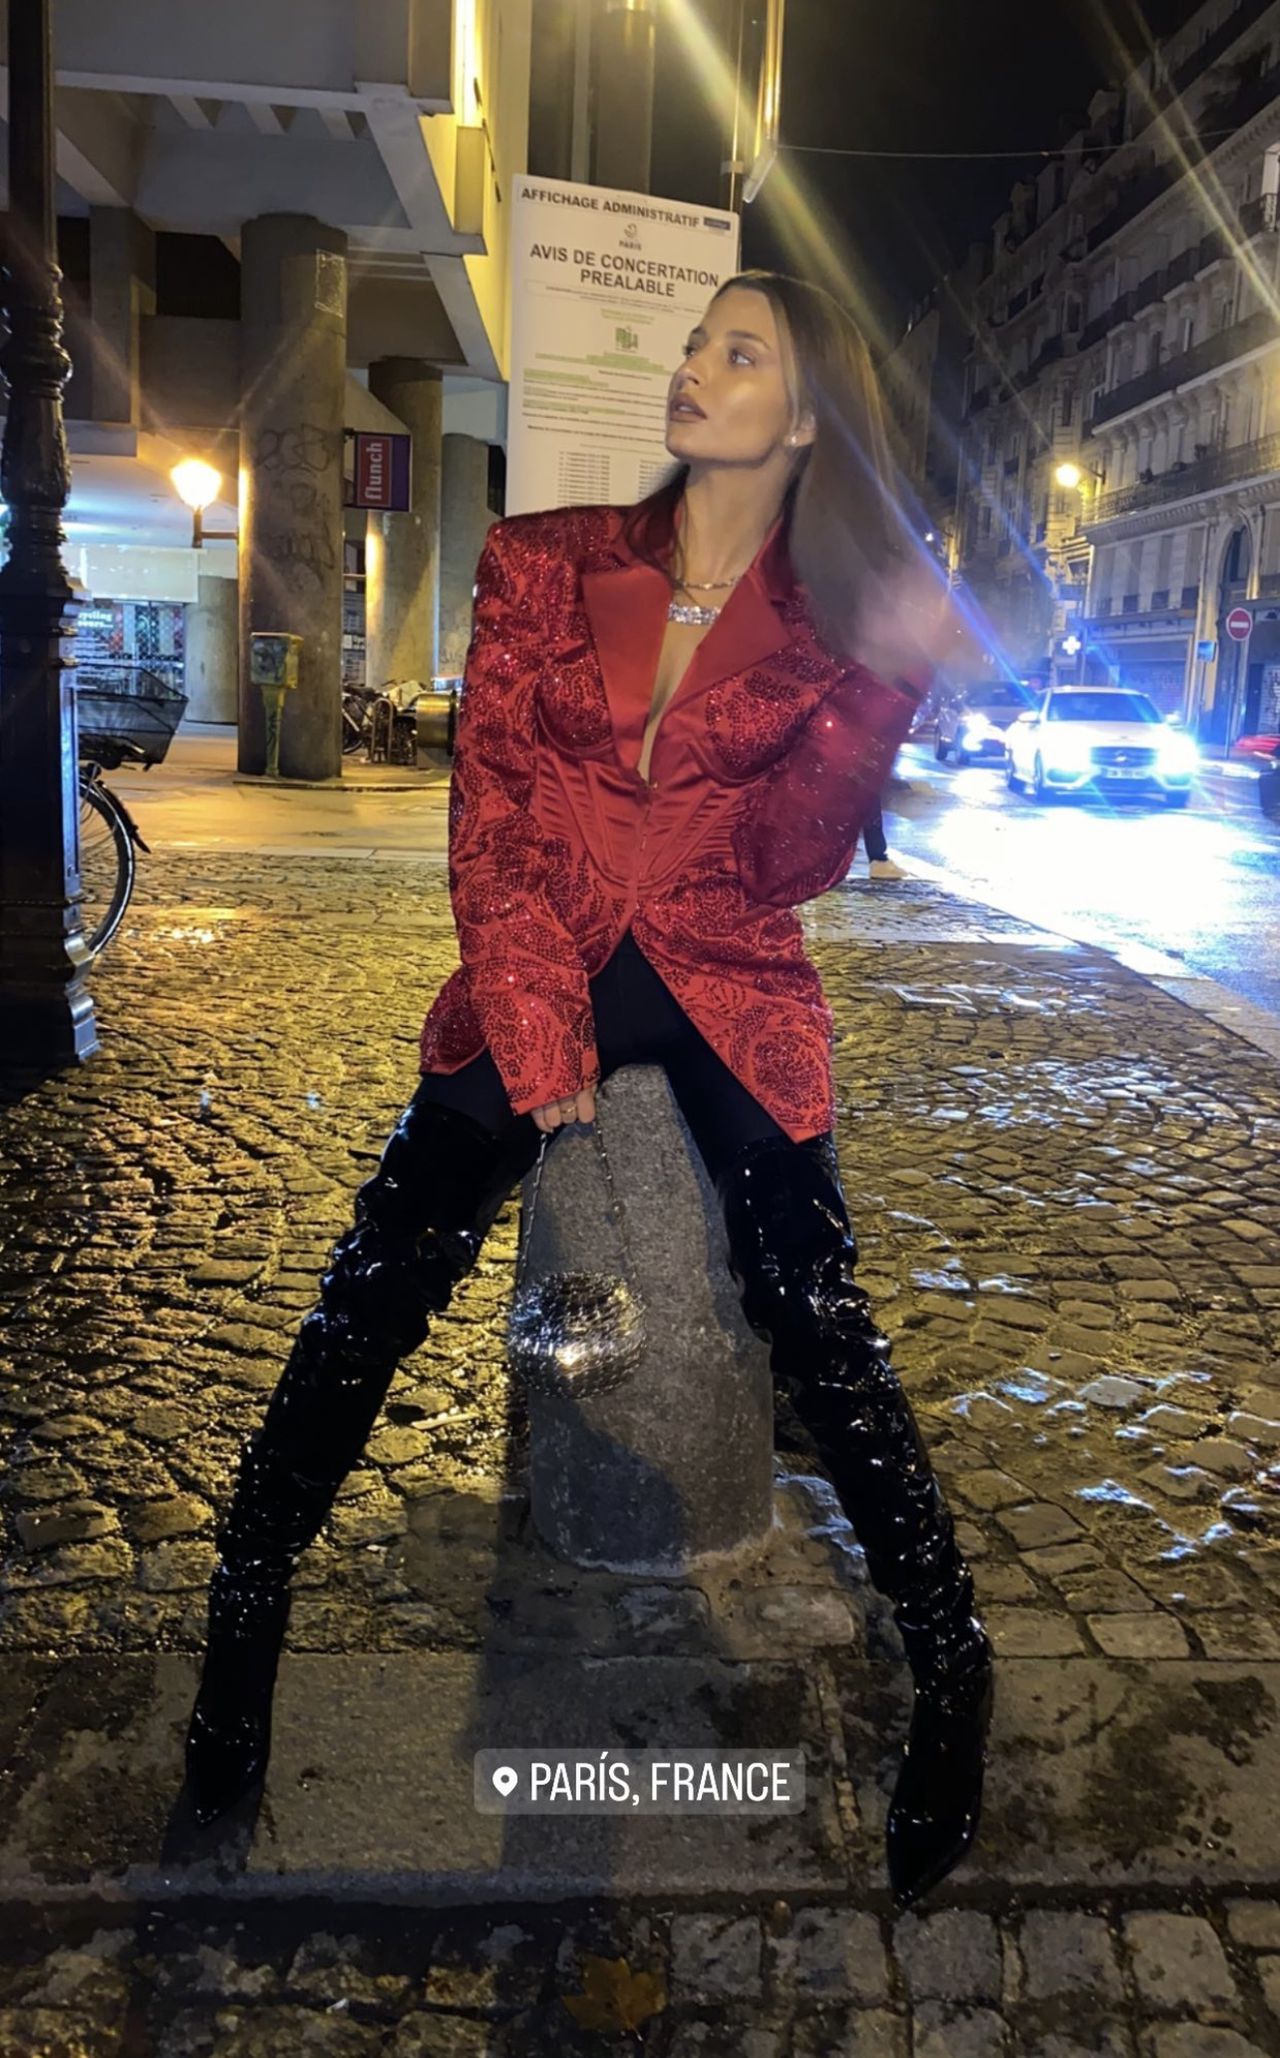 Aktorka doskonale wpisała się w nastrój nocnego i modnego Paryża
Instagram/juliawieniawa